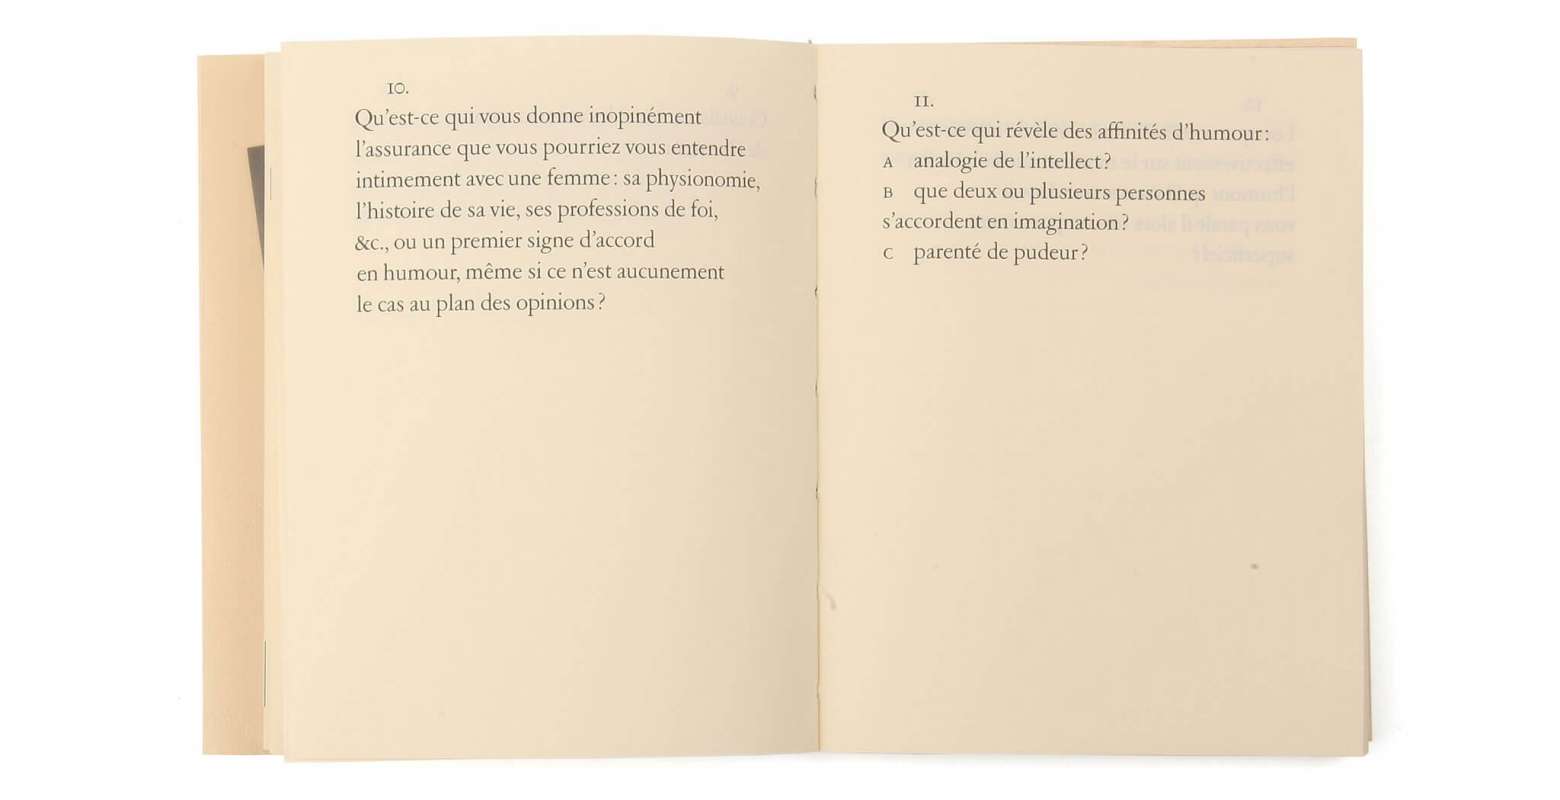 Max Frisch Questionnaires Éditions cent pages page intérieure questions 10-11